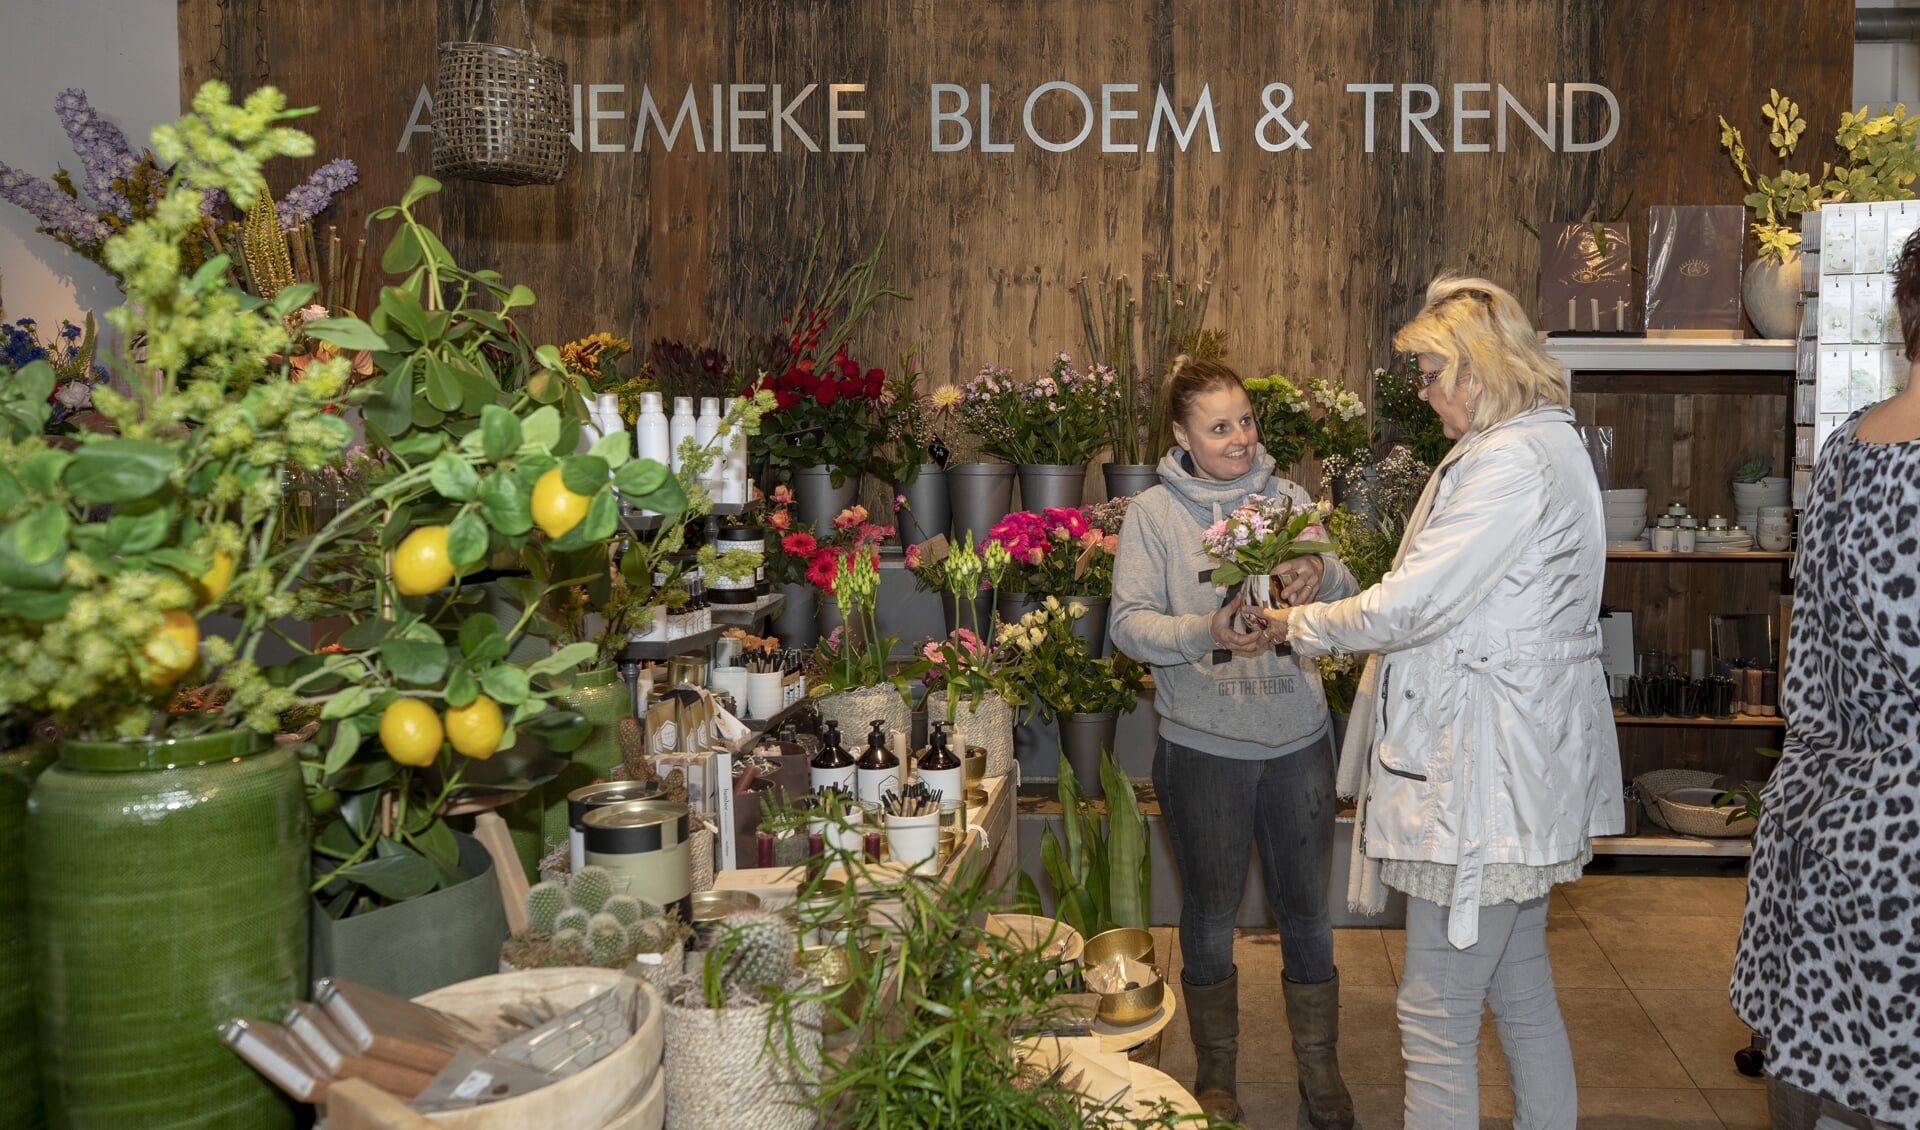 BLoem & Trend in Sleeuwijk gaat per 1 juli verder met twee nieuwe eigenaars.